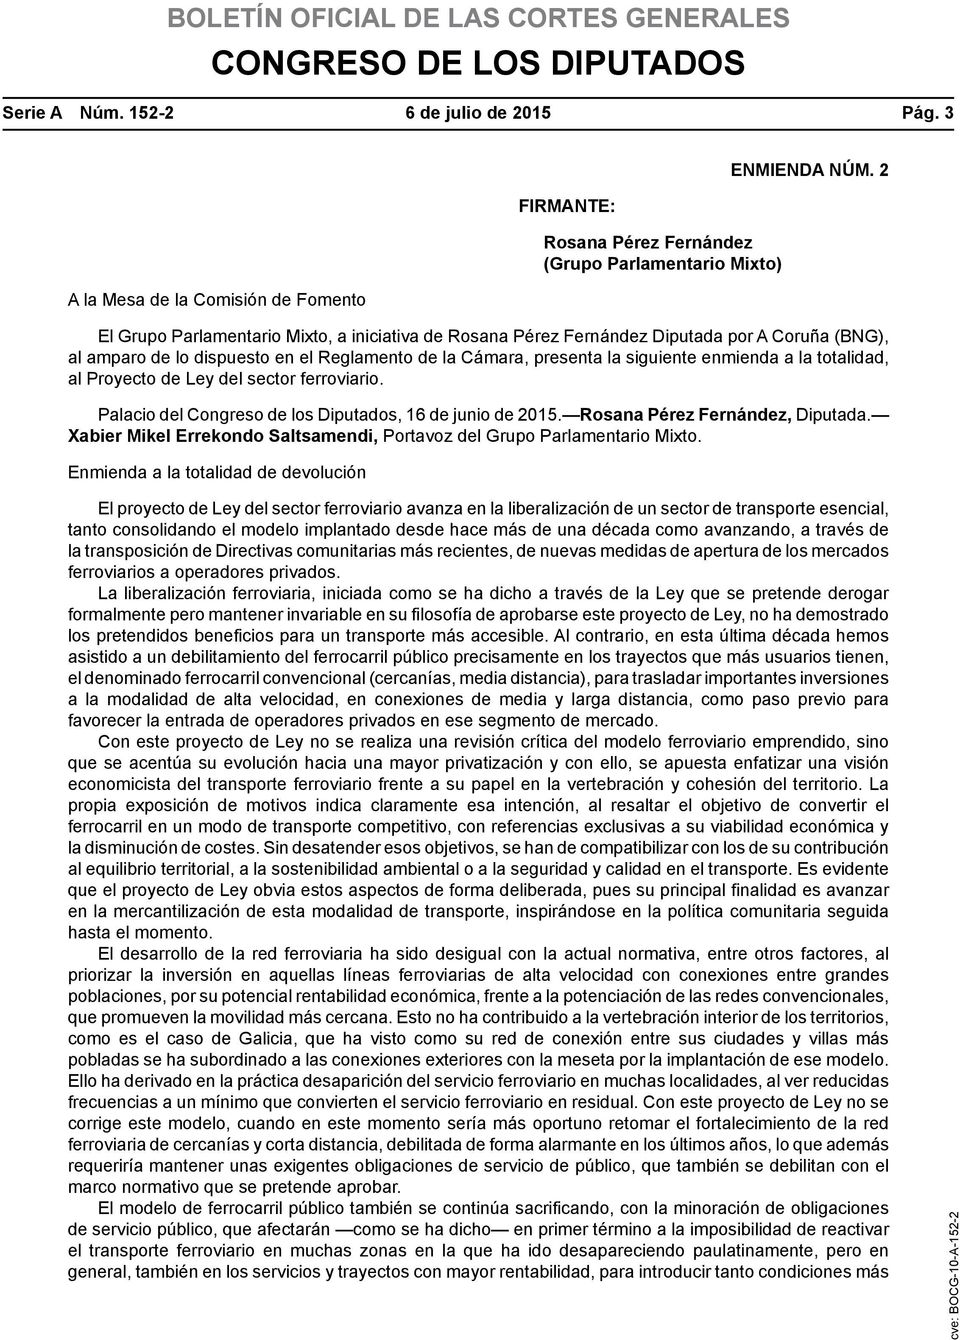 totalidad, al Proyecto de Ley del sector ferroviario. Palacio del Congreso de los Diputados, 16 de junio de 2015. Rosana Pérez Fernández, Diputada.